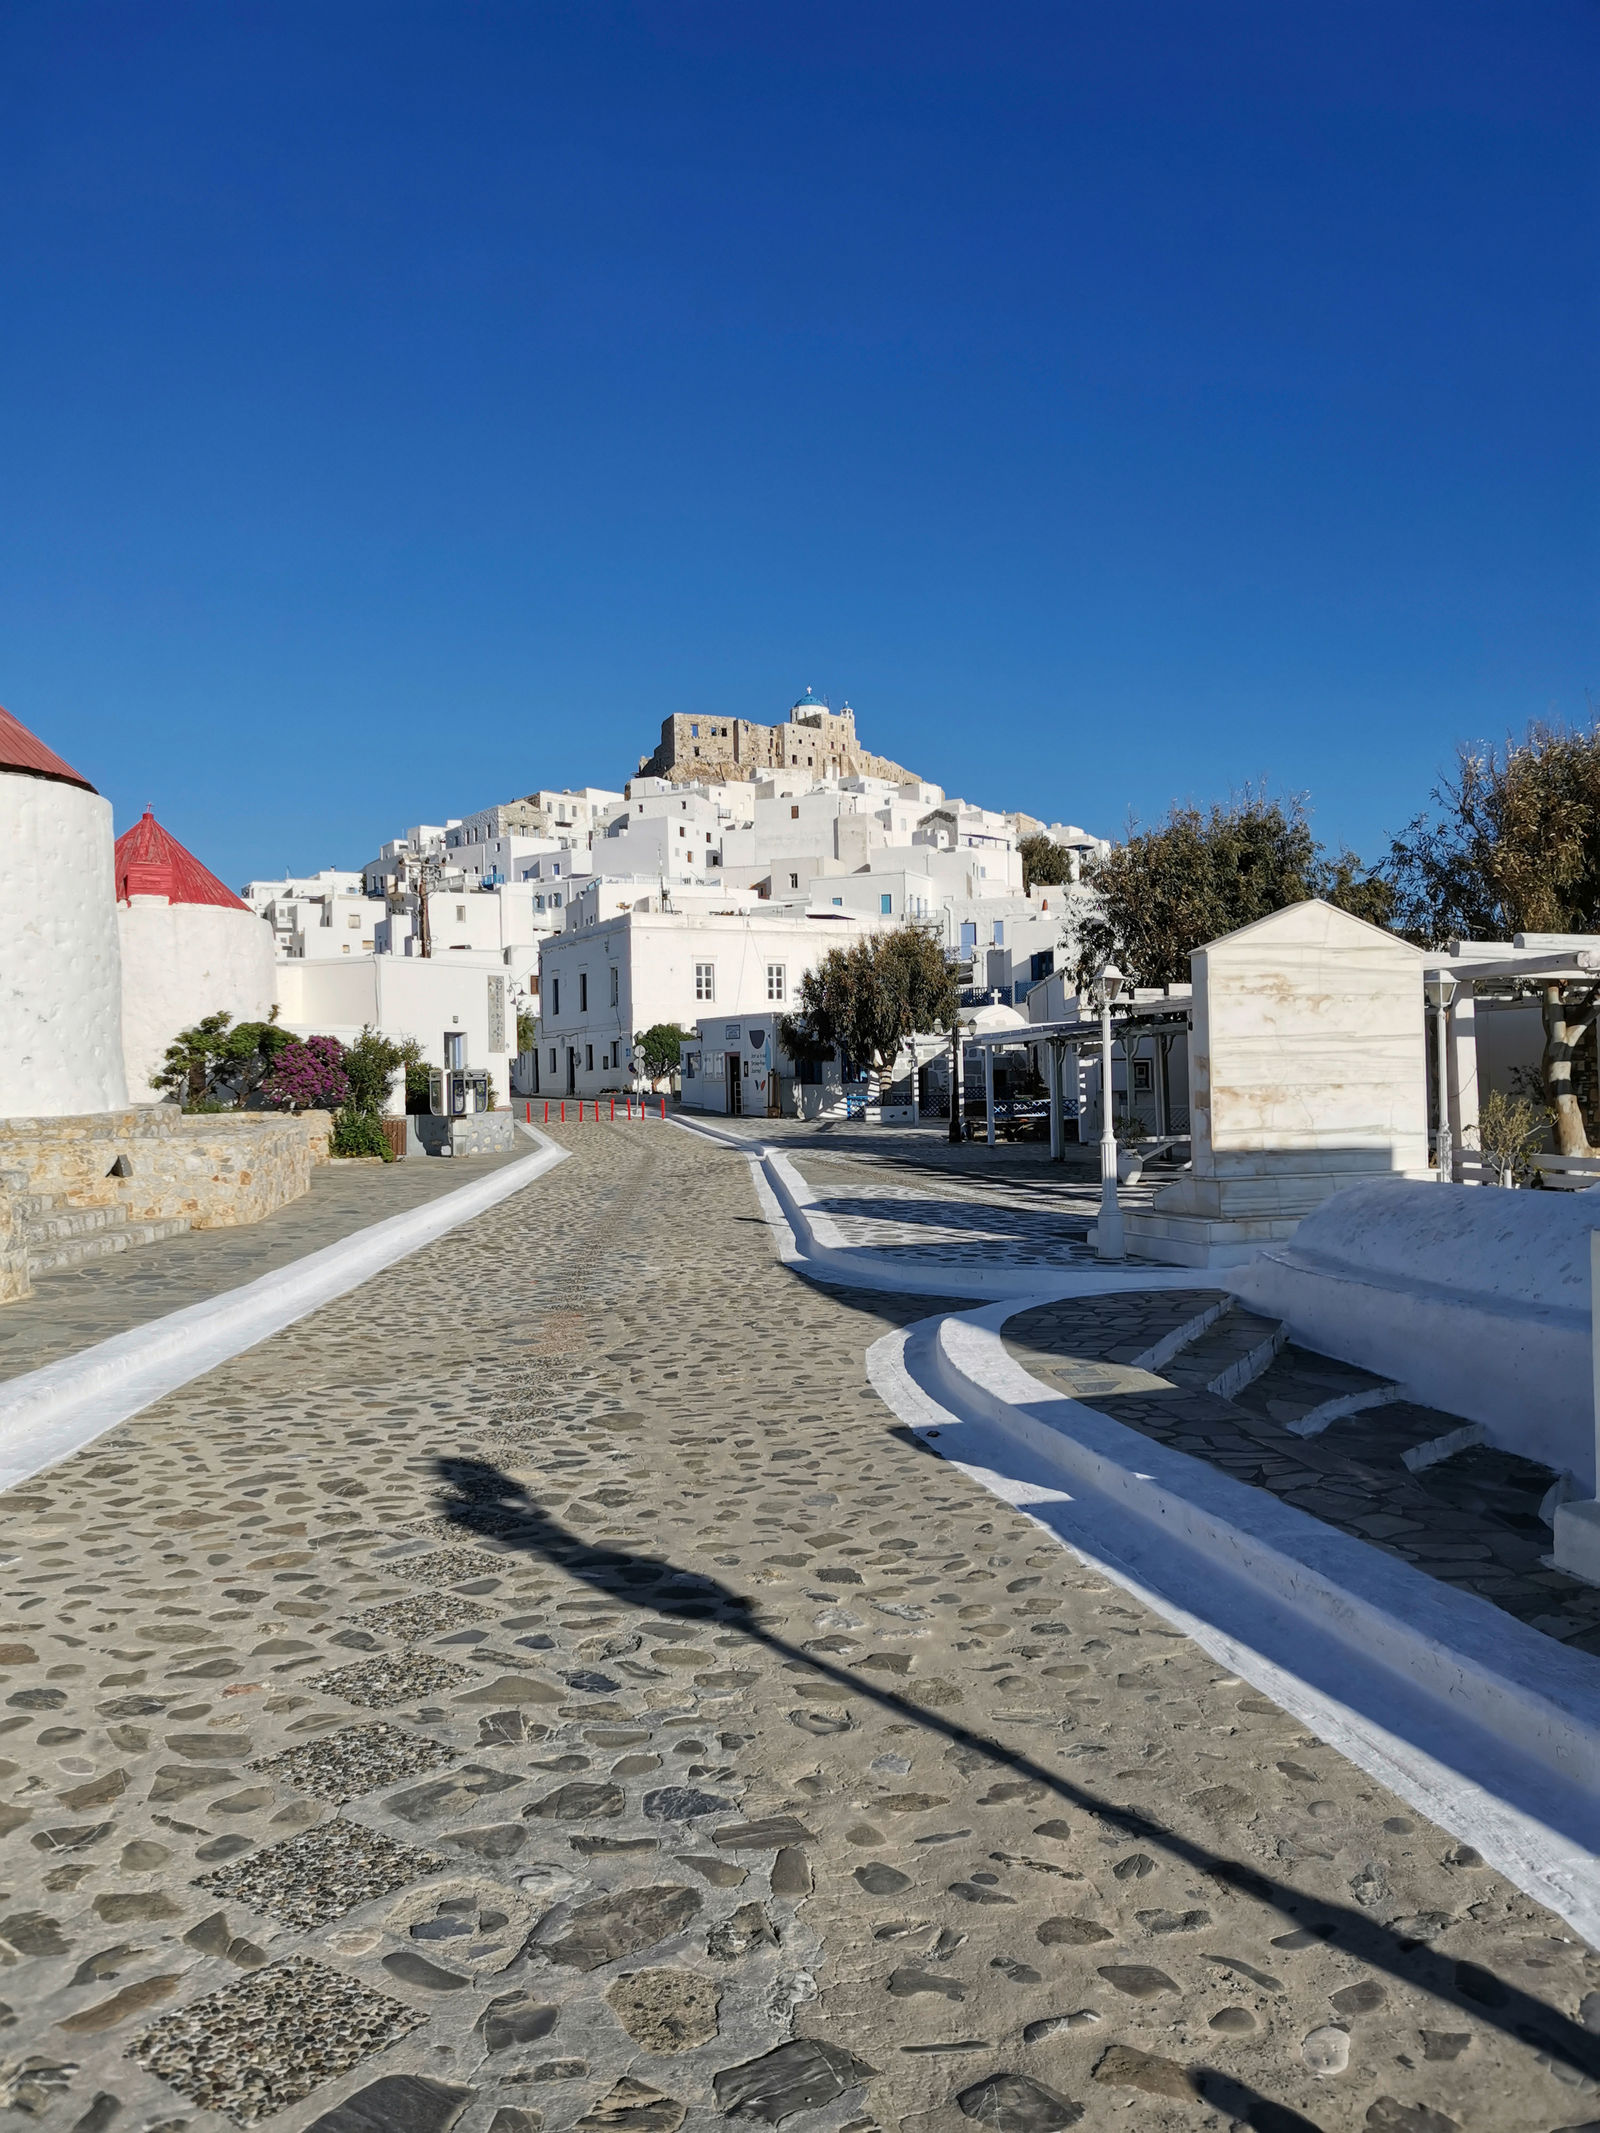 The greek island of Astypalea